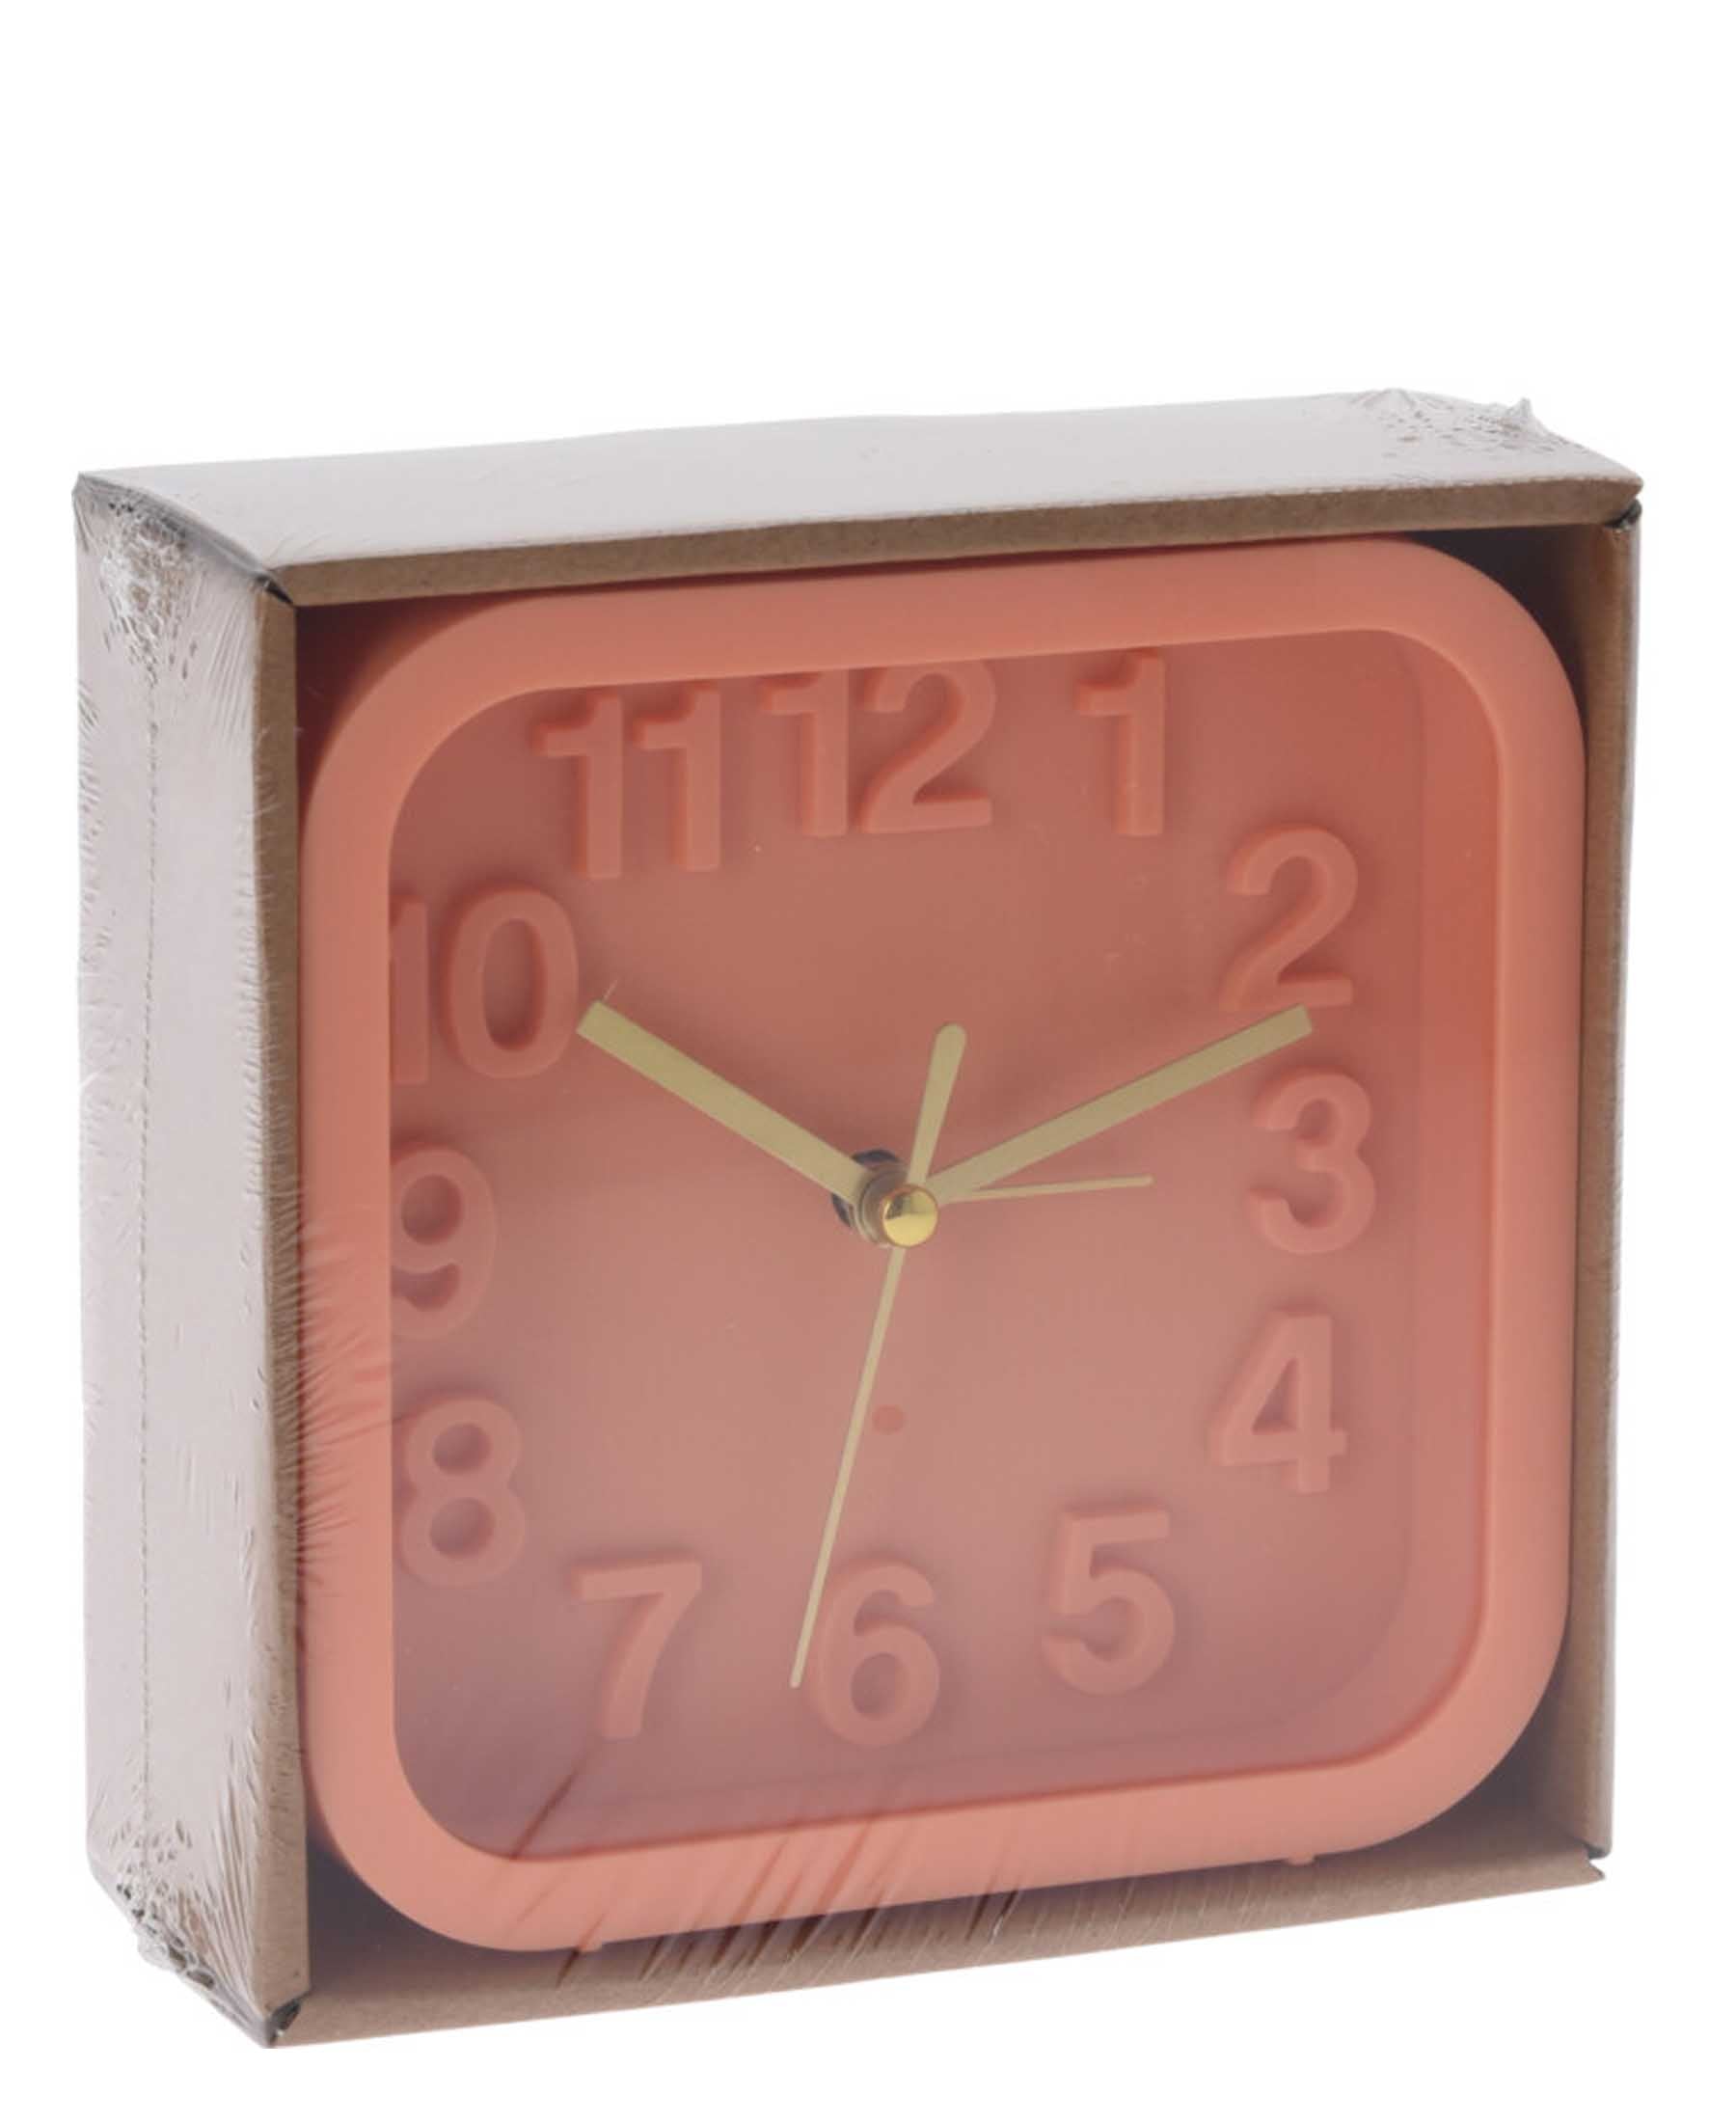 Urban Decor Square Alarm Clock 13.2cm - Orange